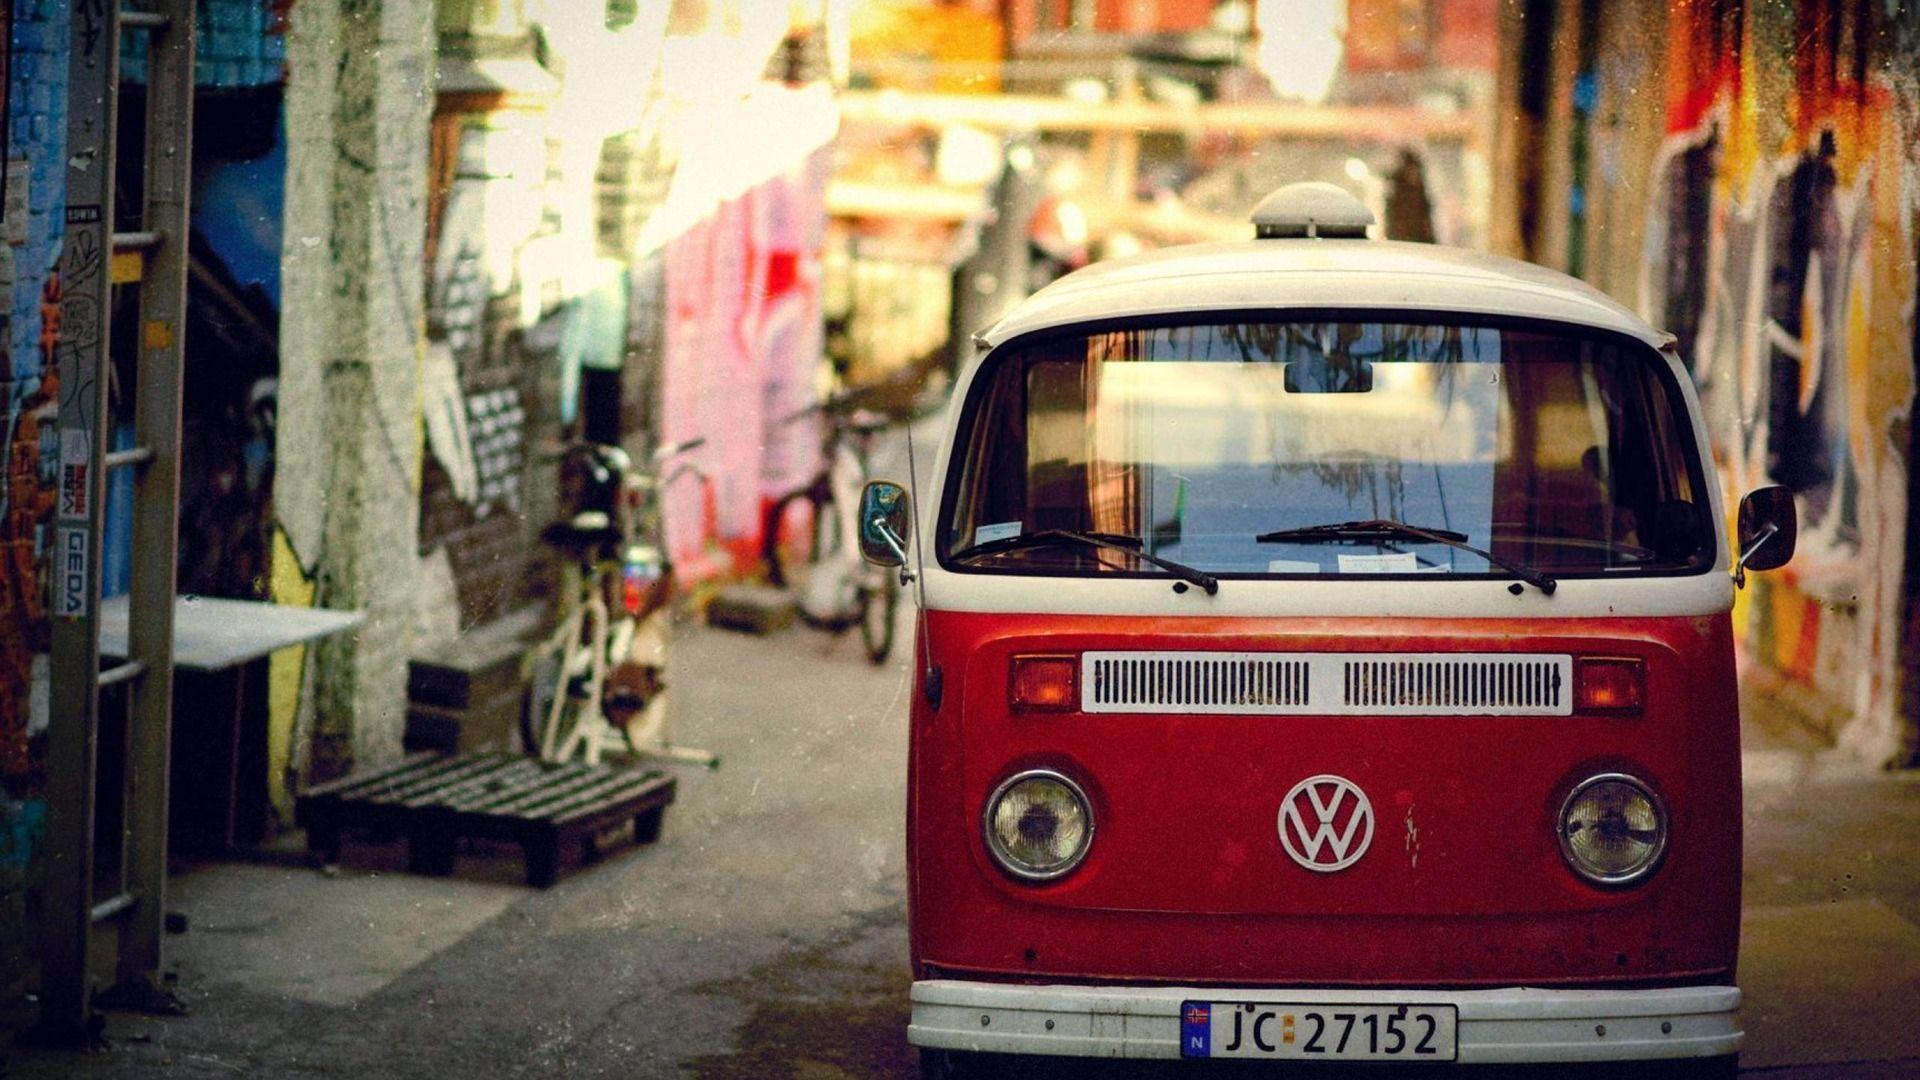 Volkswagen Bus Wallpaper Mobile #bHh. Volkswagen bus